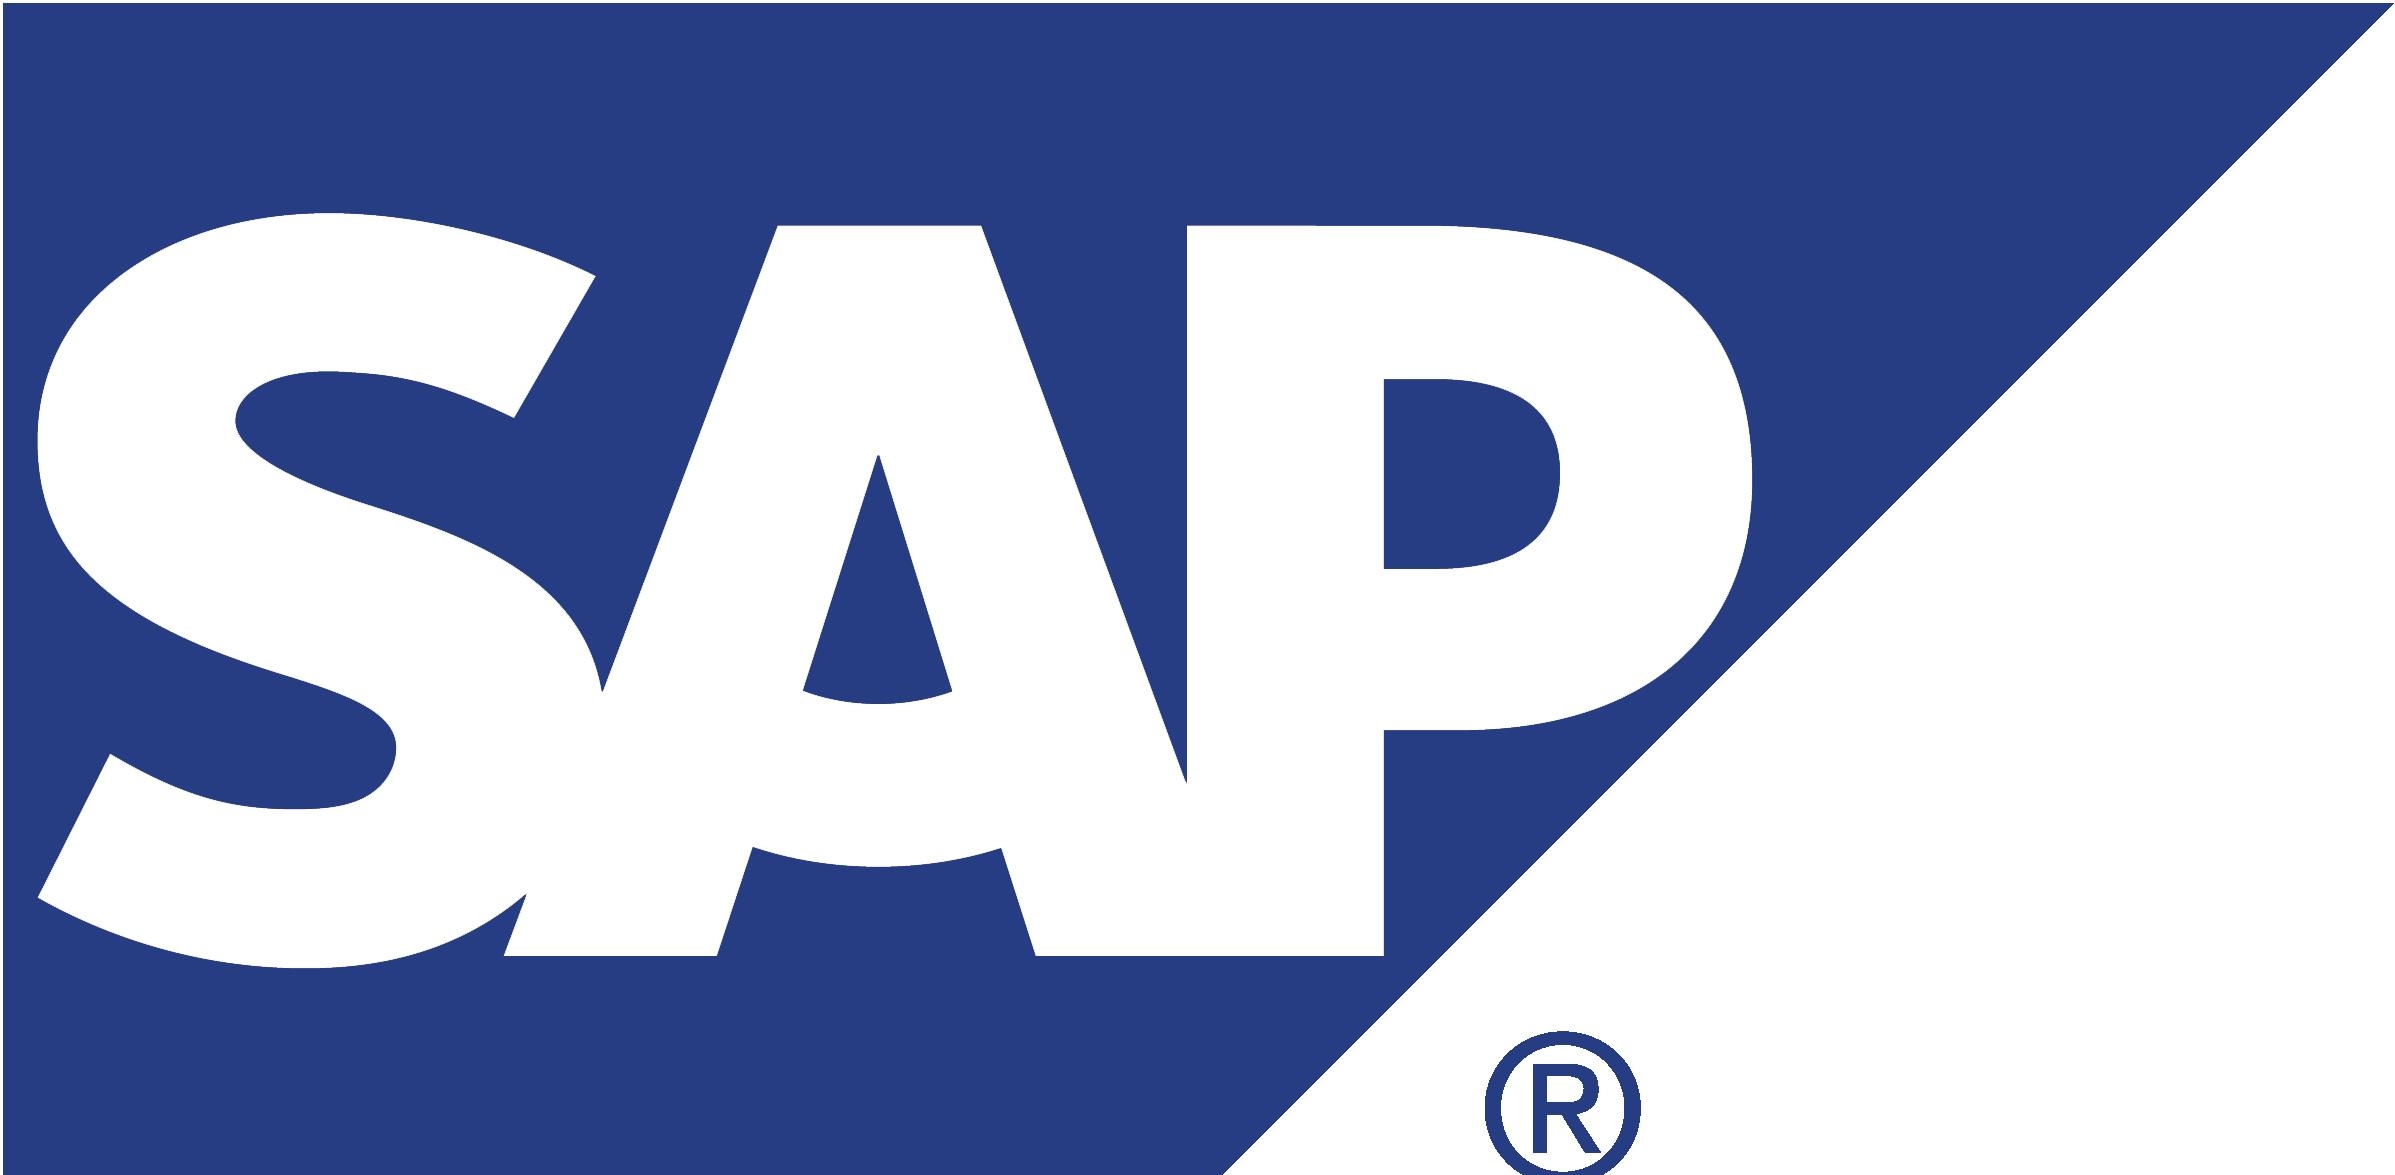 капитализация компании SAP